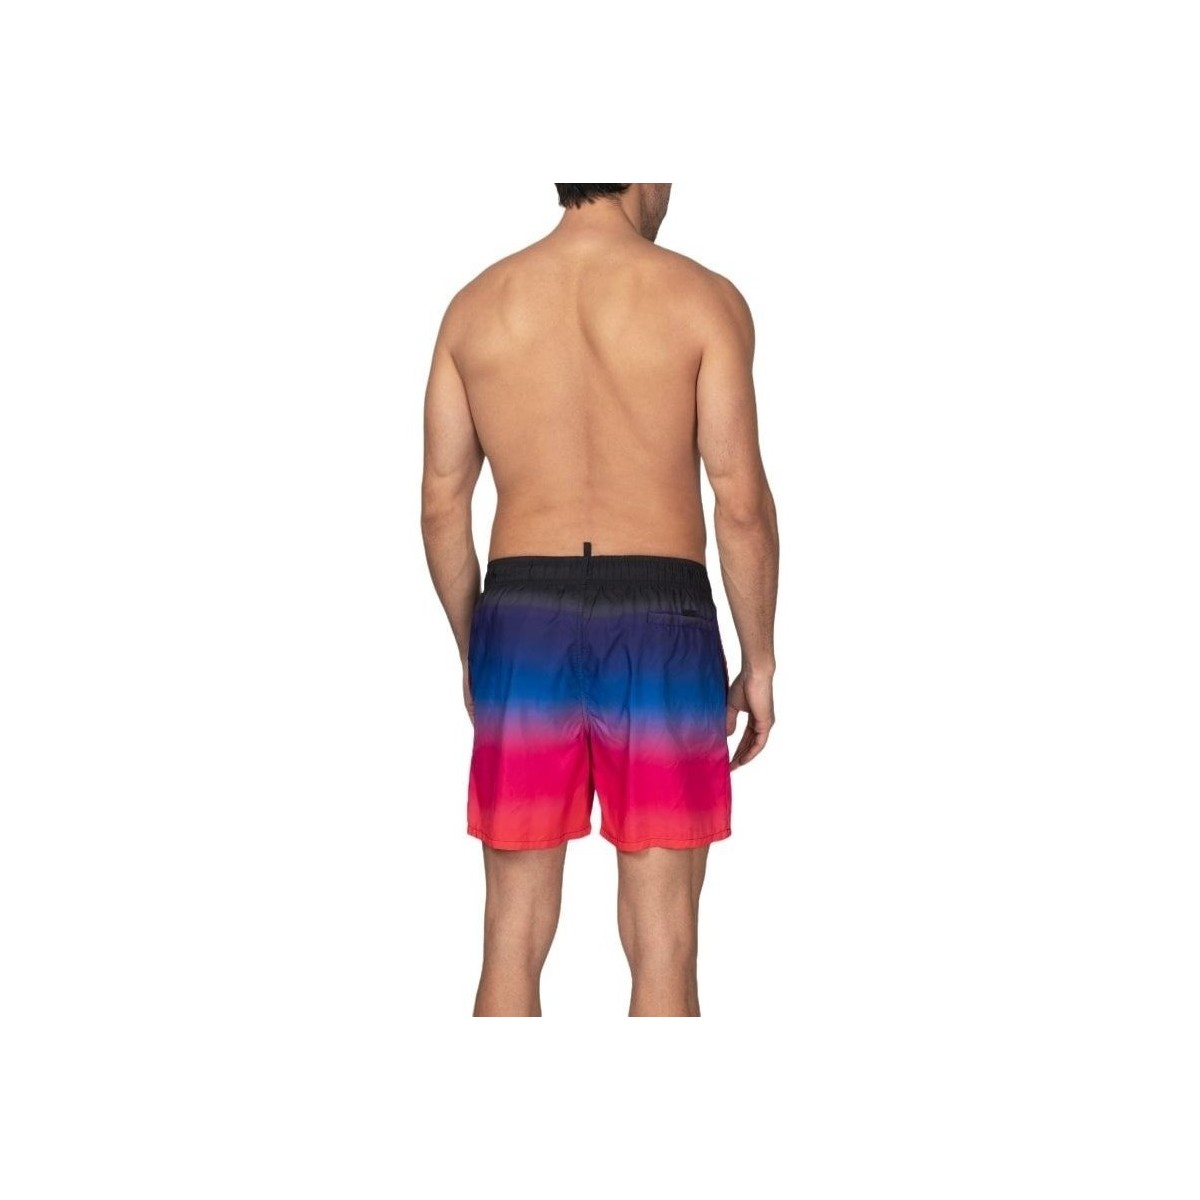 Abbigliamento Uomo Pantaloni Effek F22-2036 Multicolore